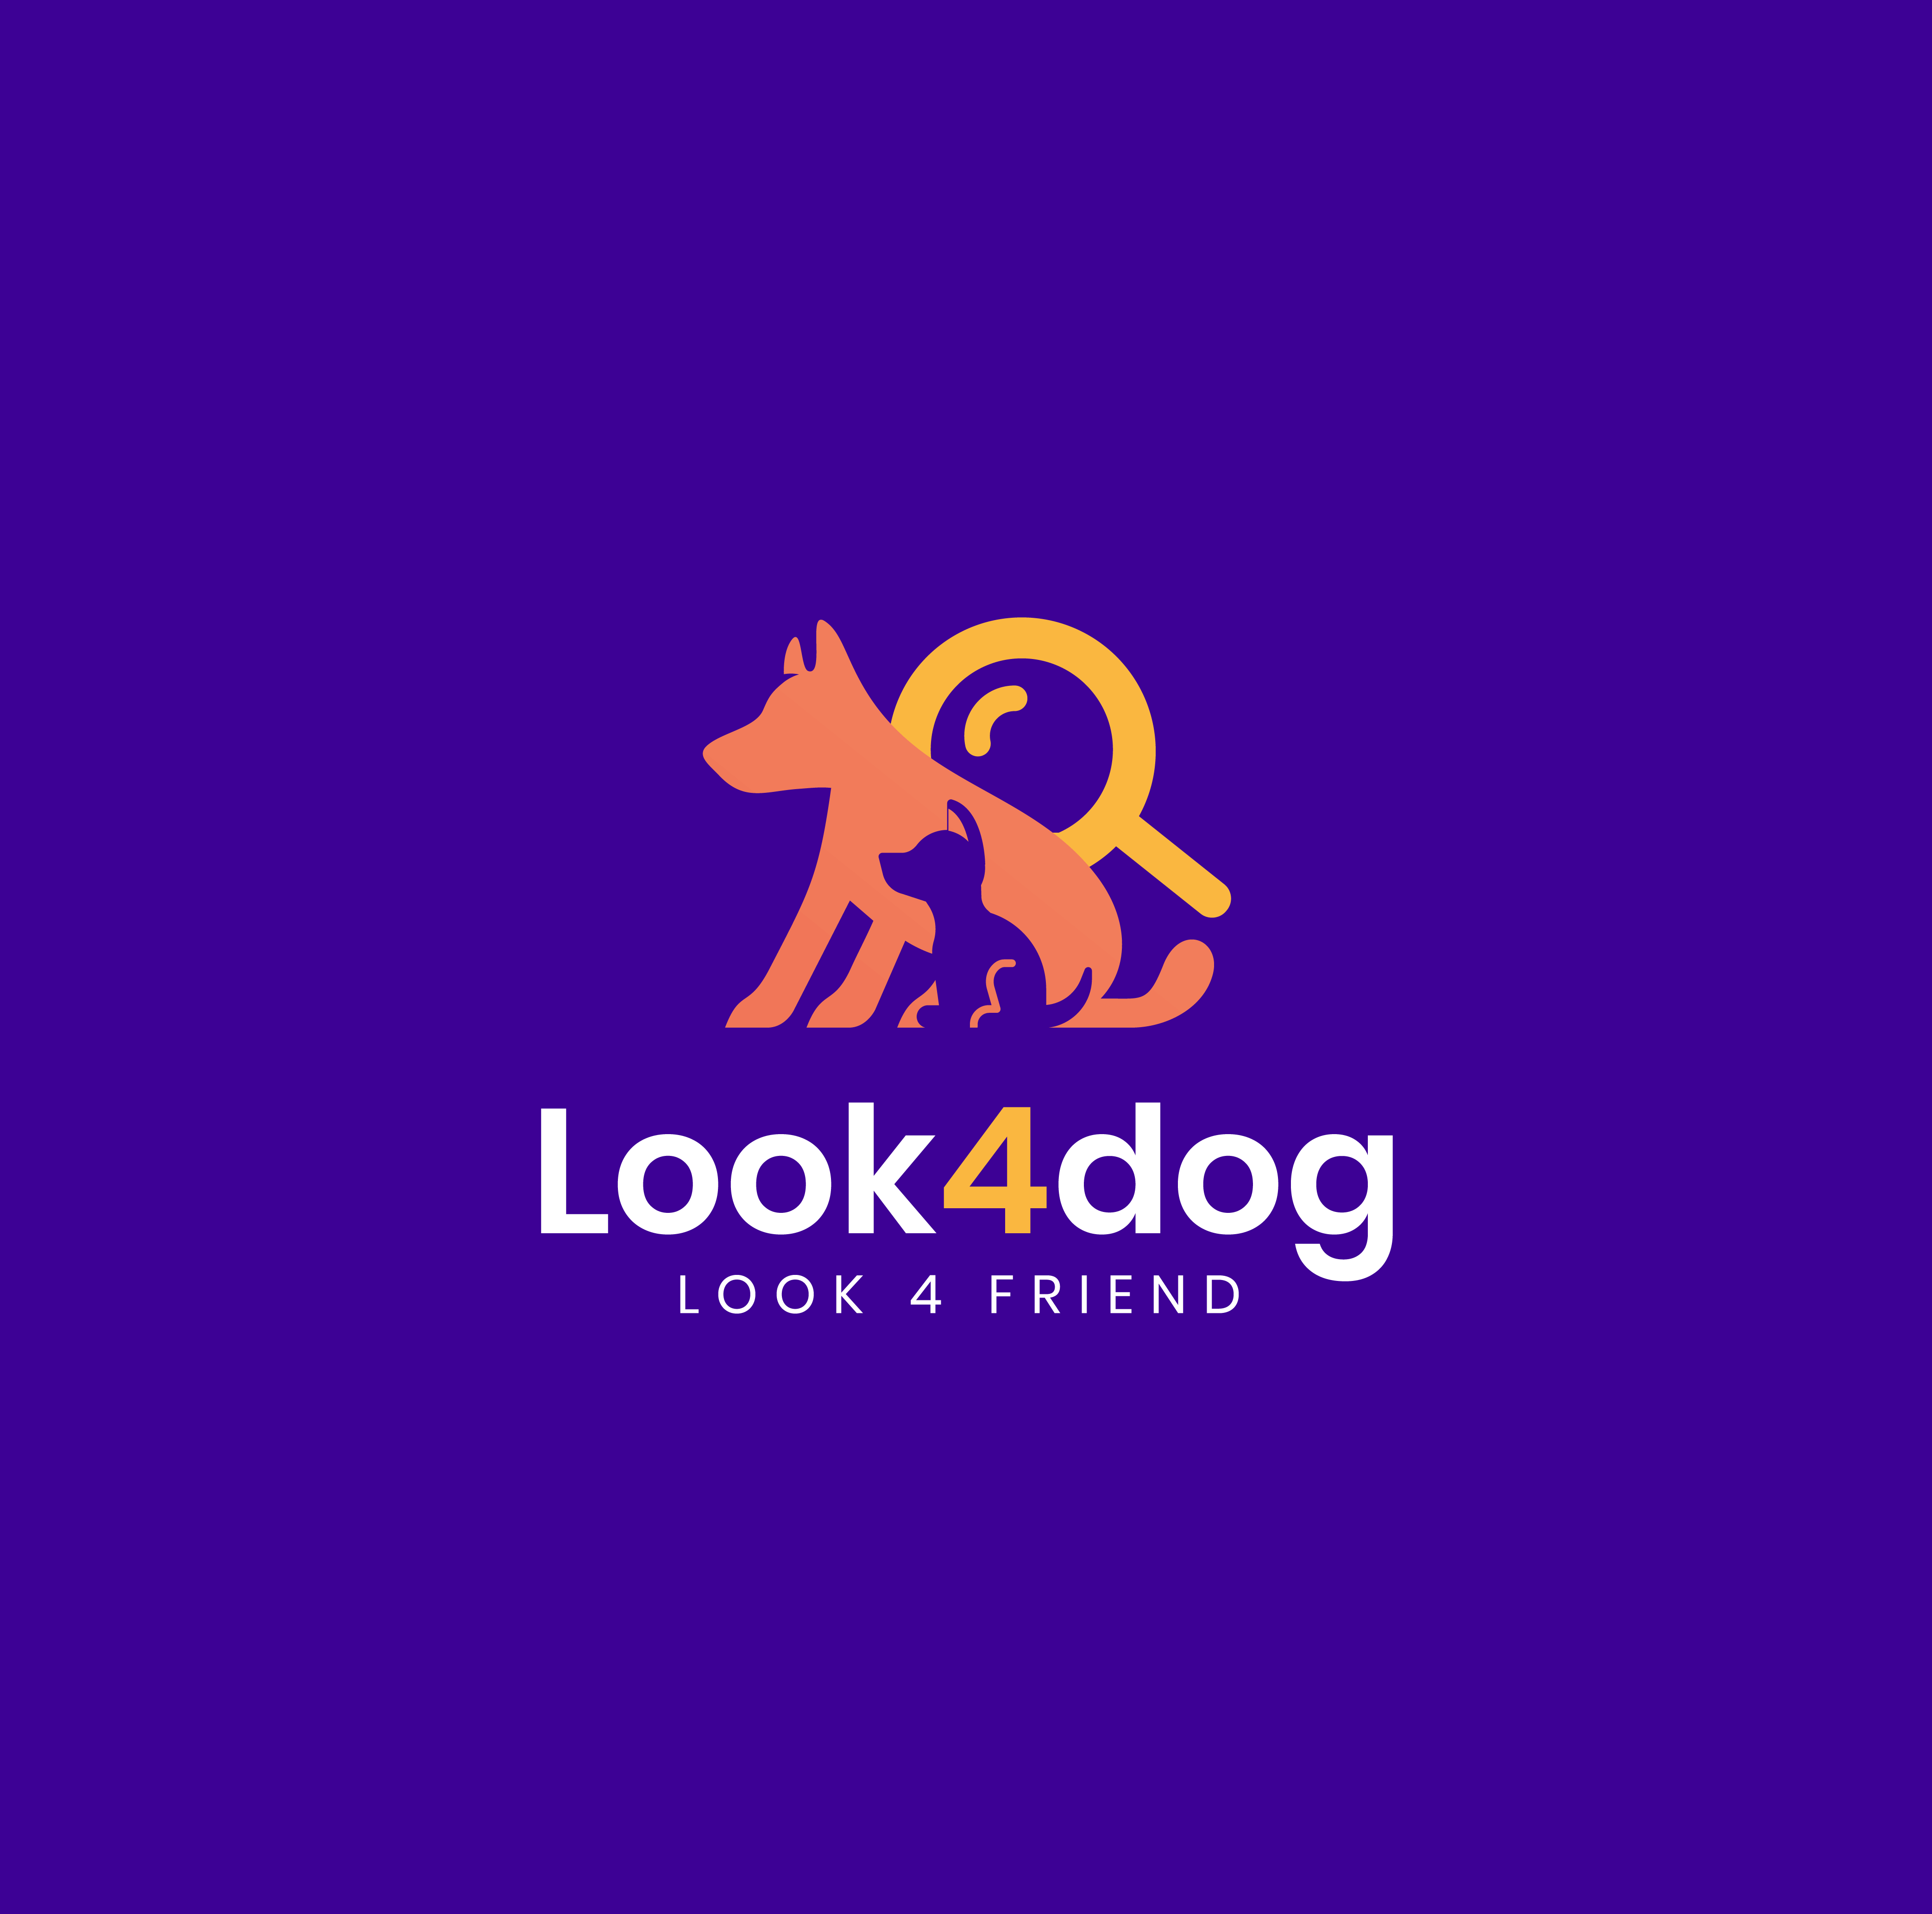 Jak założyć hodowlę psów? Co mam zrobić i o czym pamiętać? Poradnik | 🐕 Look4dog.com